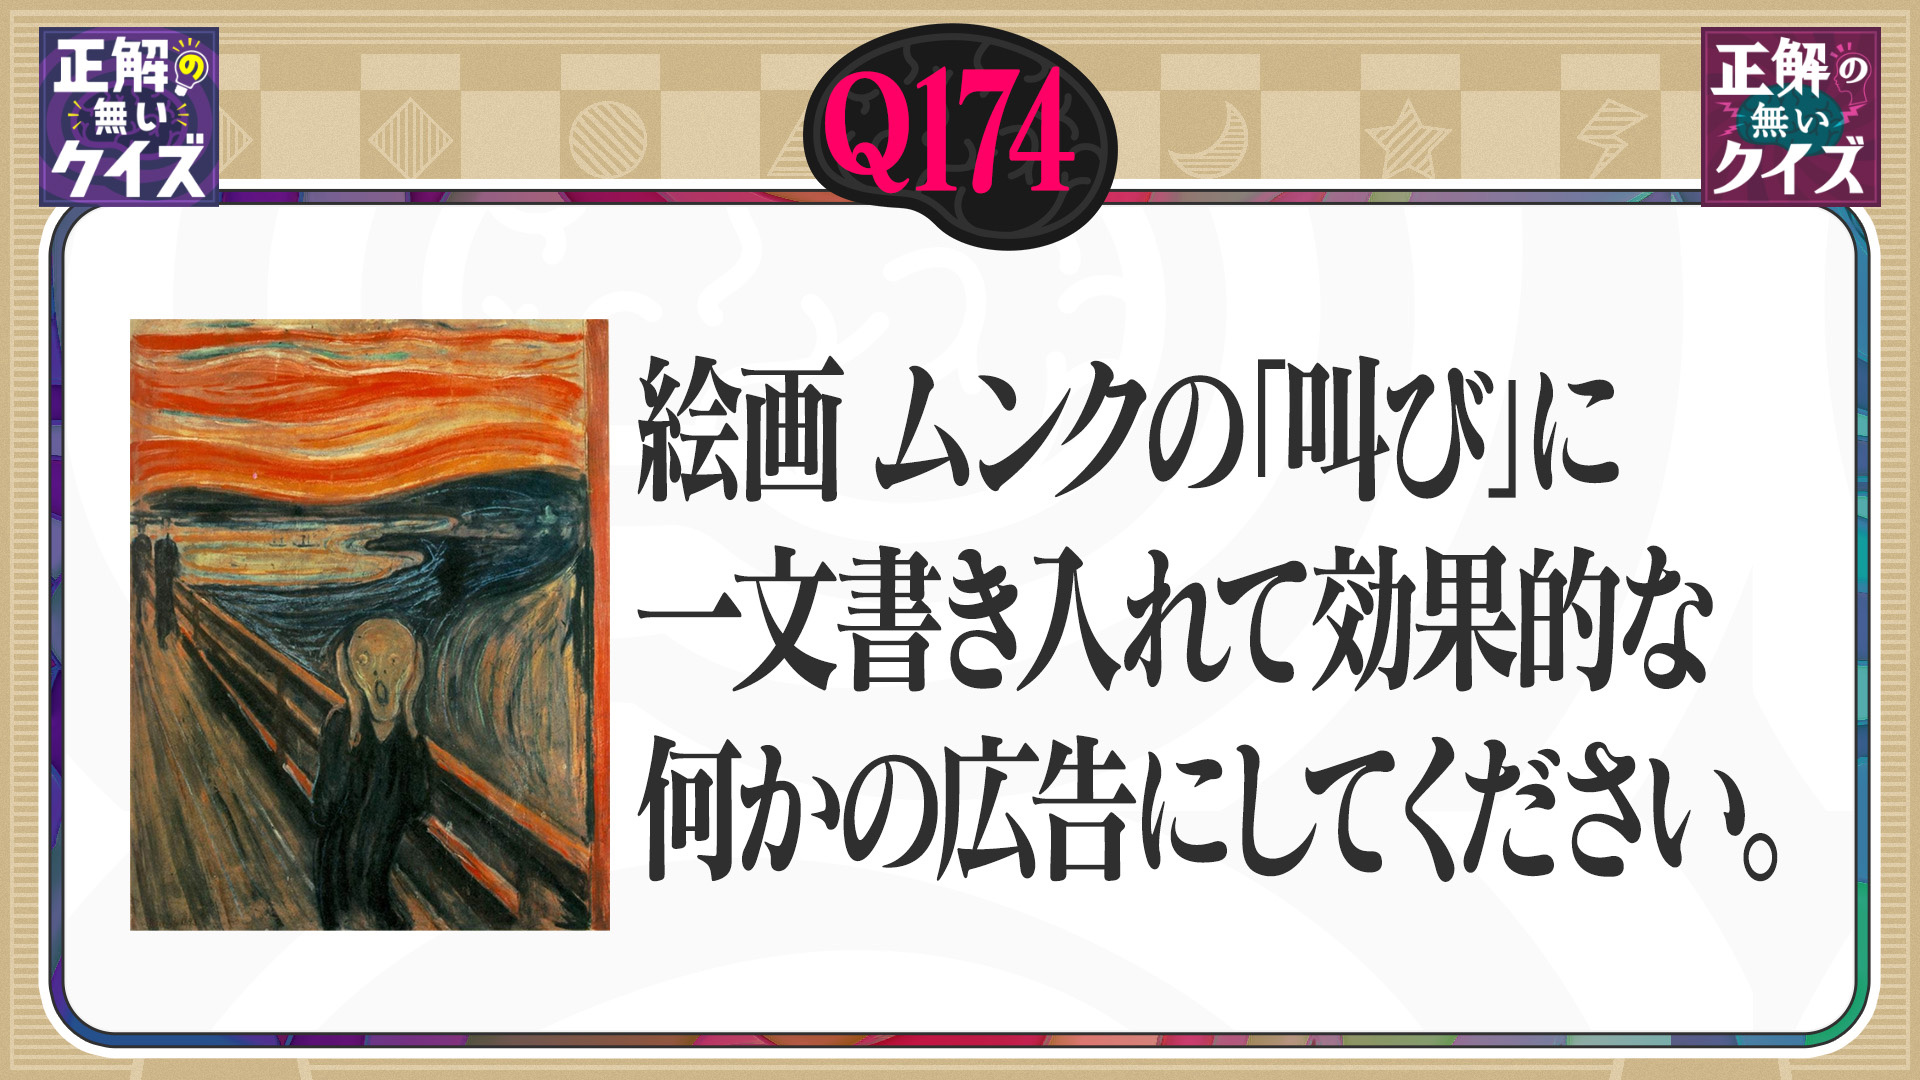 【Q174】絵画ムンクの「叫び」に一文書き入れて効果的な何かの広告にしてください。